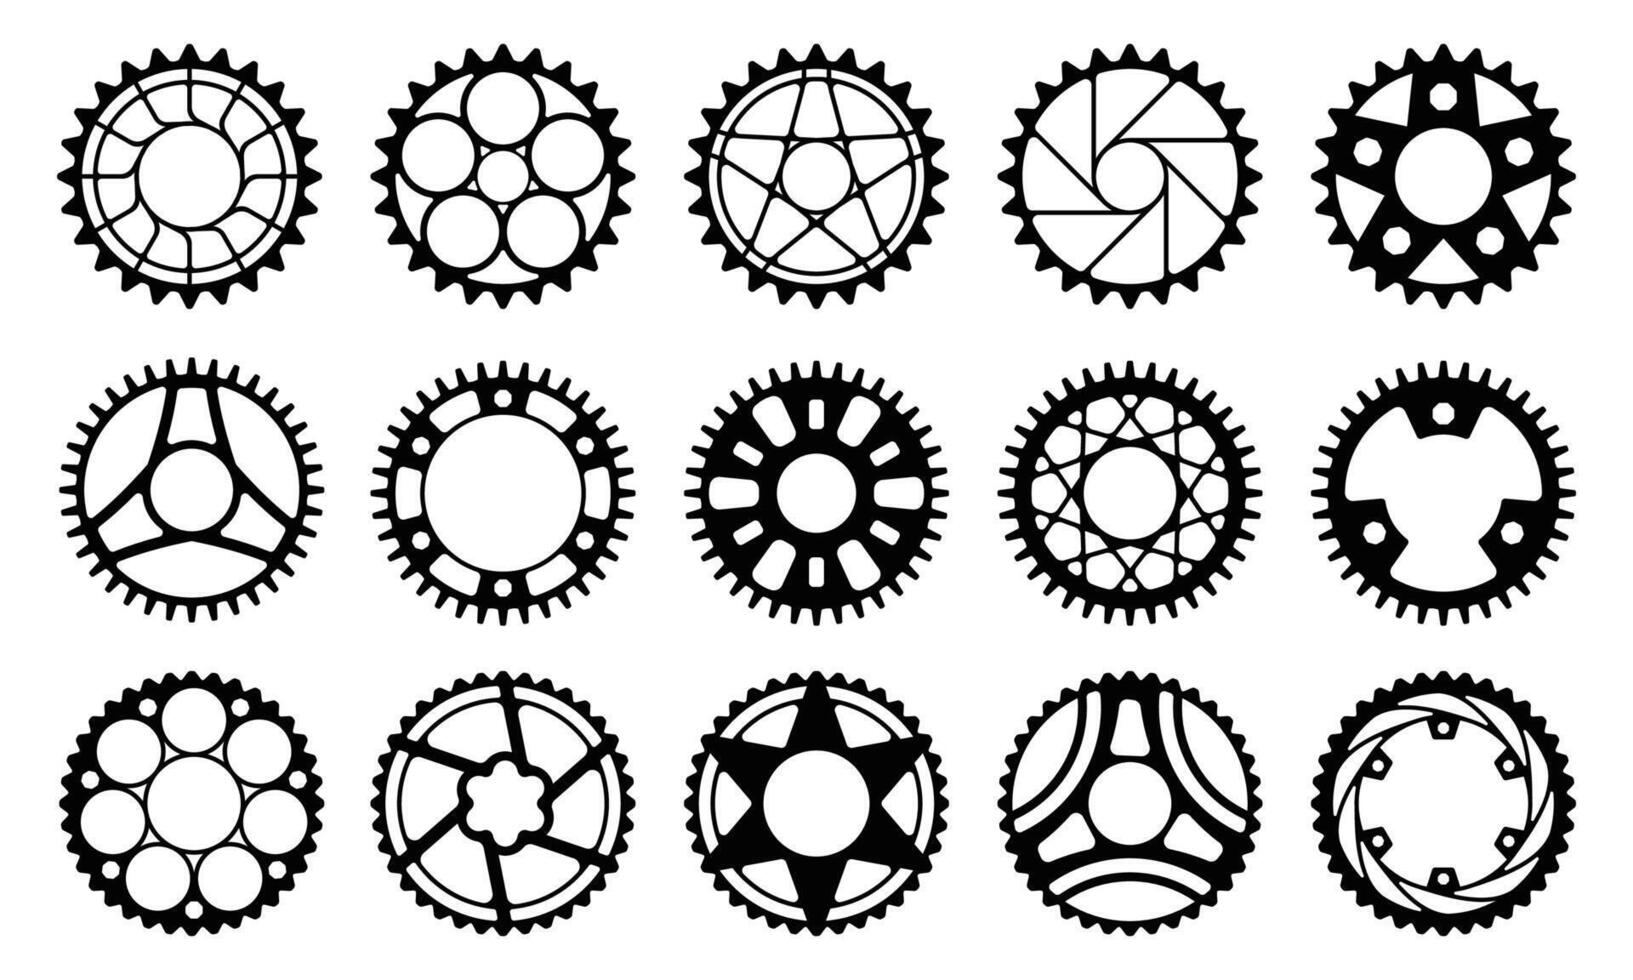 fiets uitrusting wiel. fabriek fiets tandwiel met tandrad, industrieel mechanisme circulaire schijf voor keten drijfveer. vector illustratie